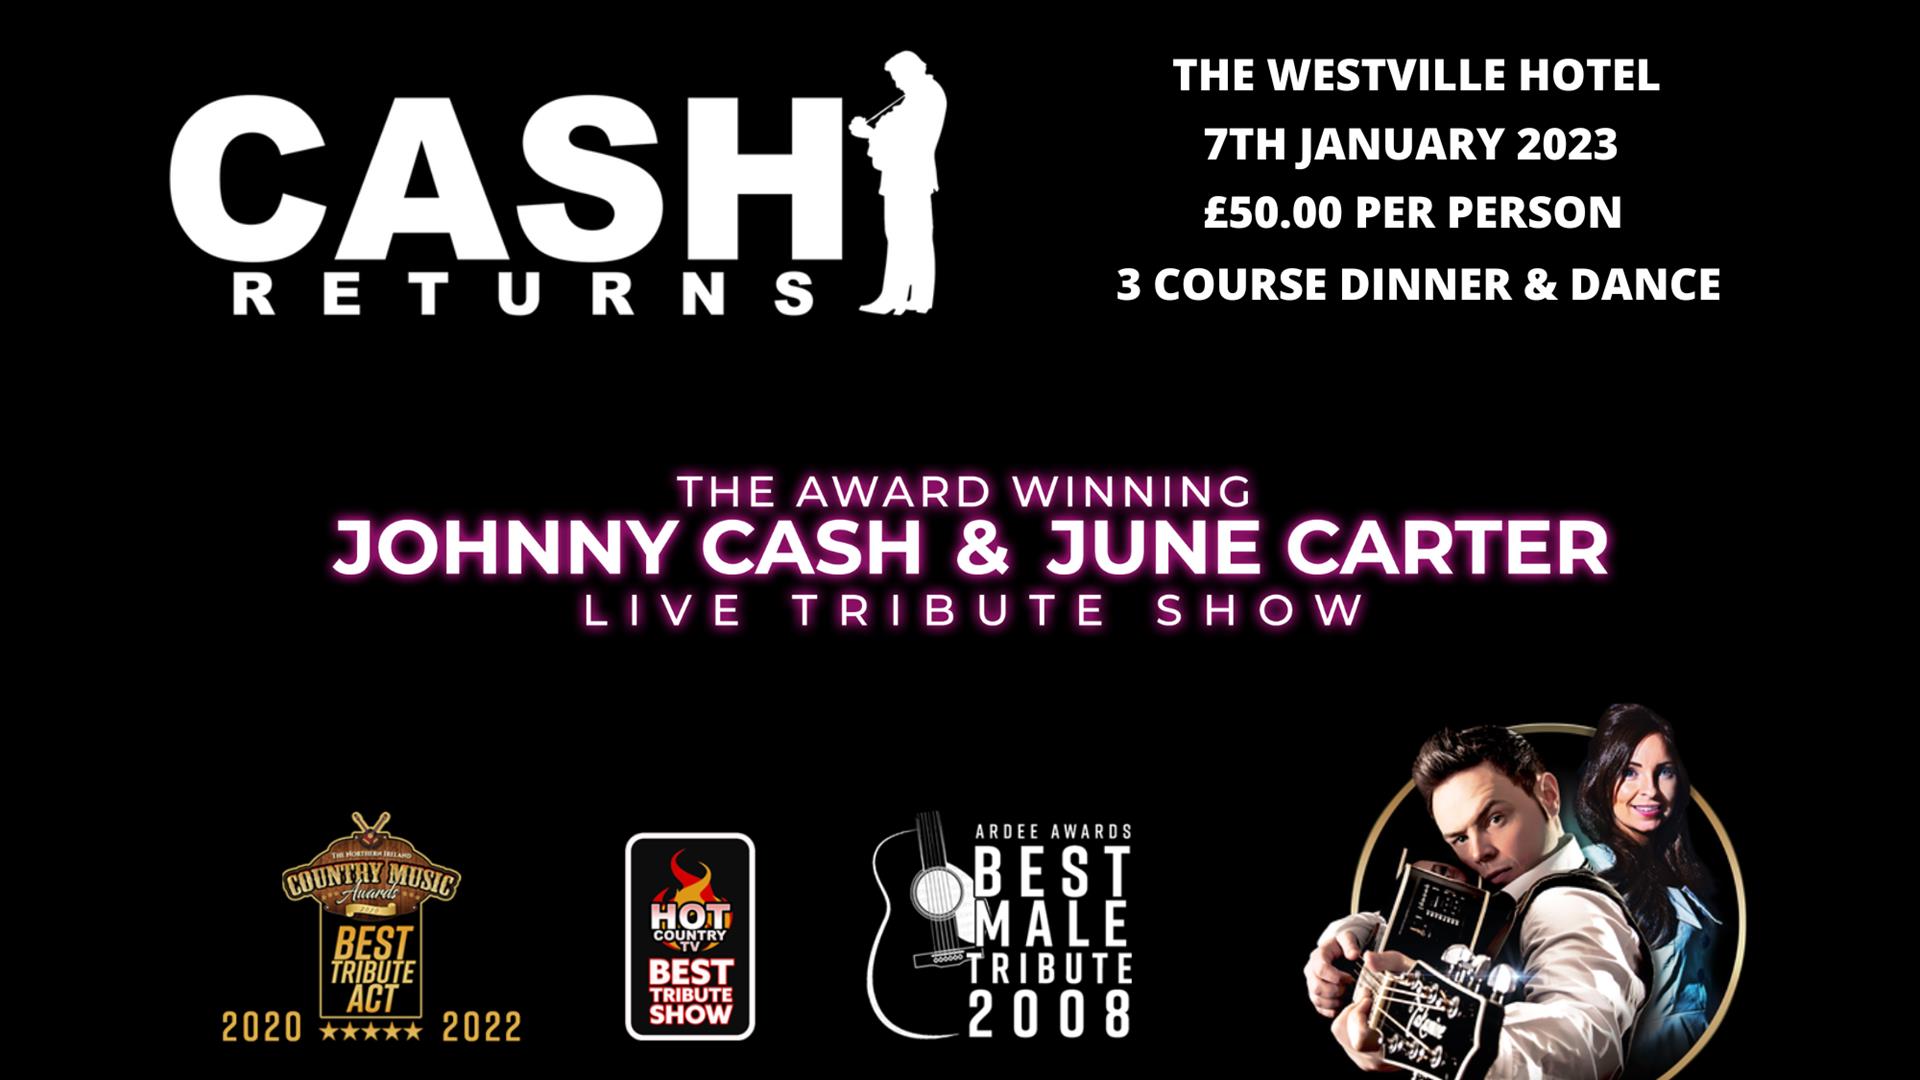 Cash Returns Live at The Westville Hotel